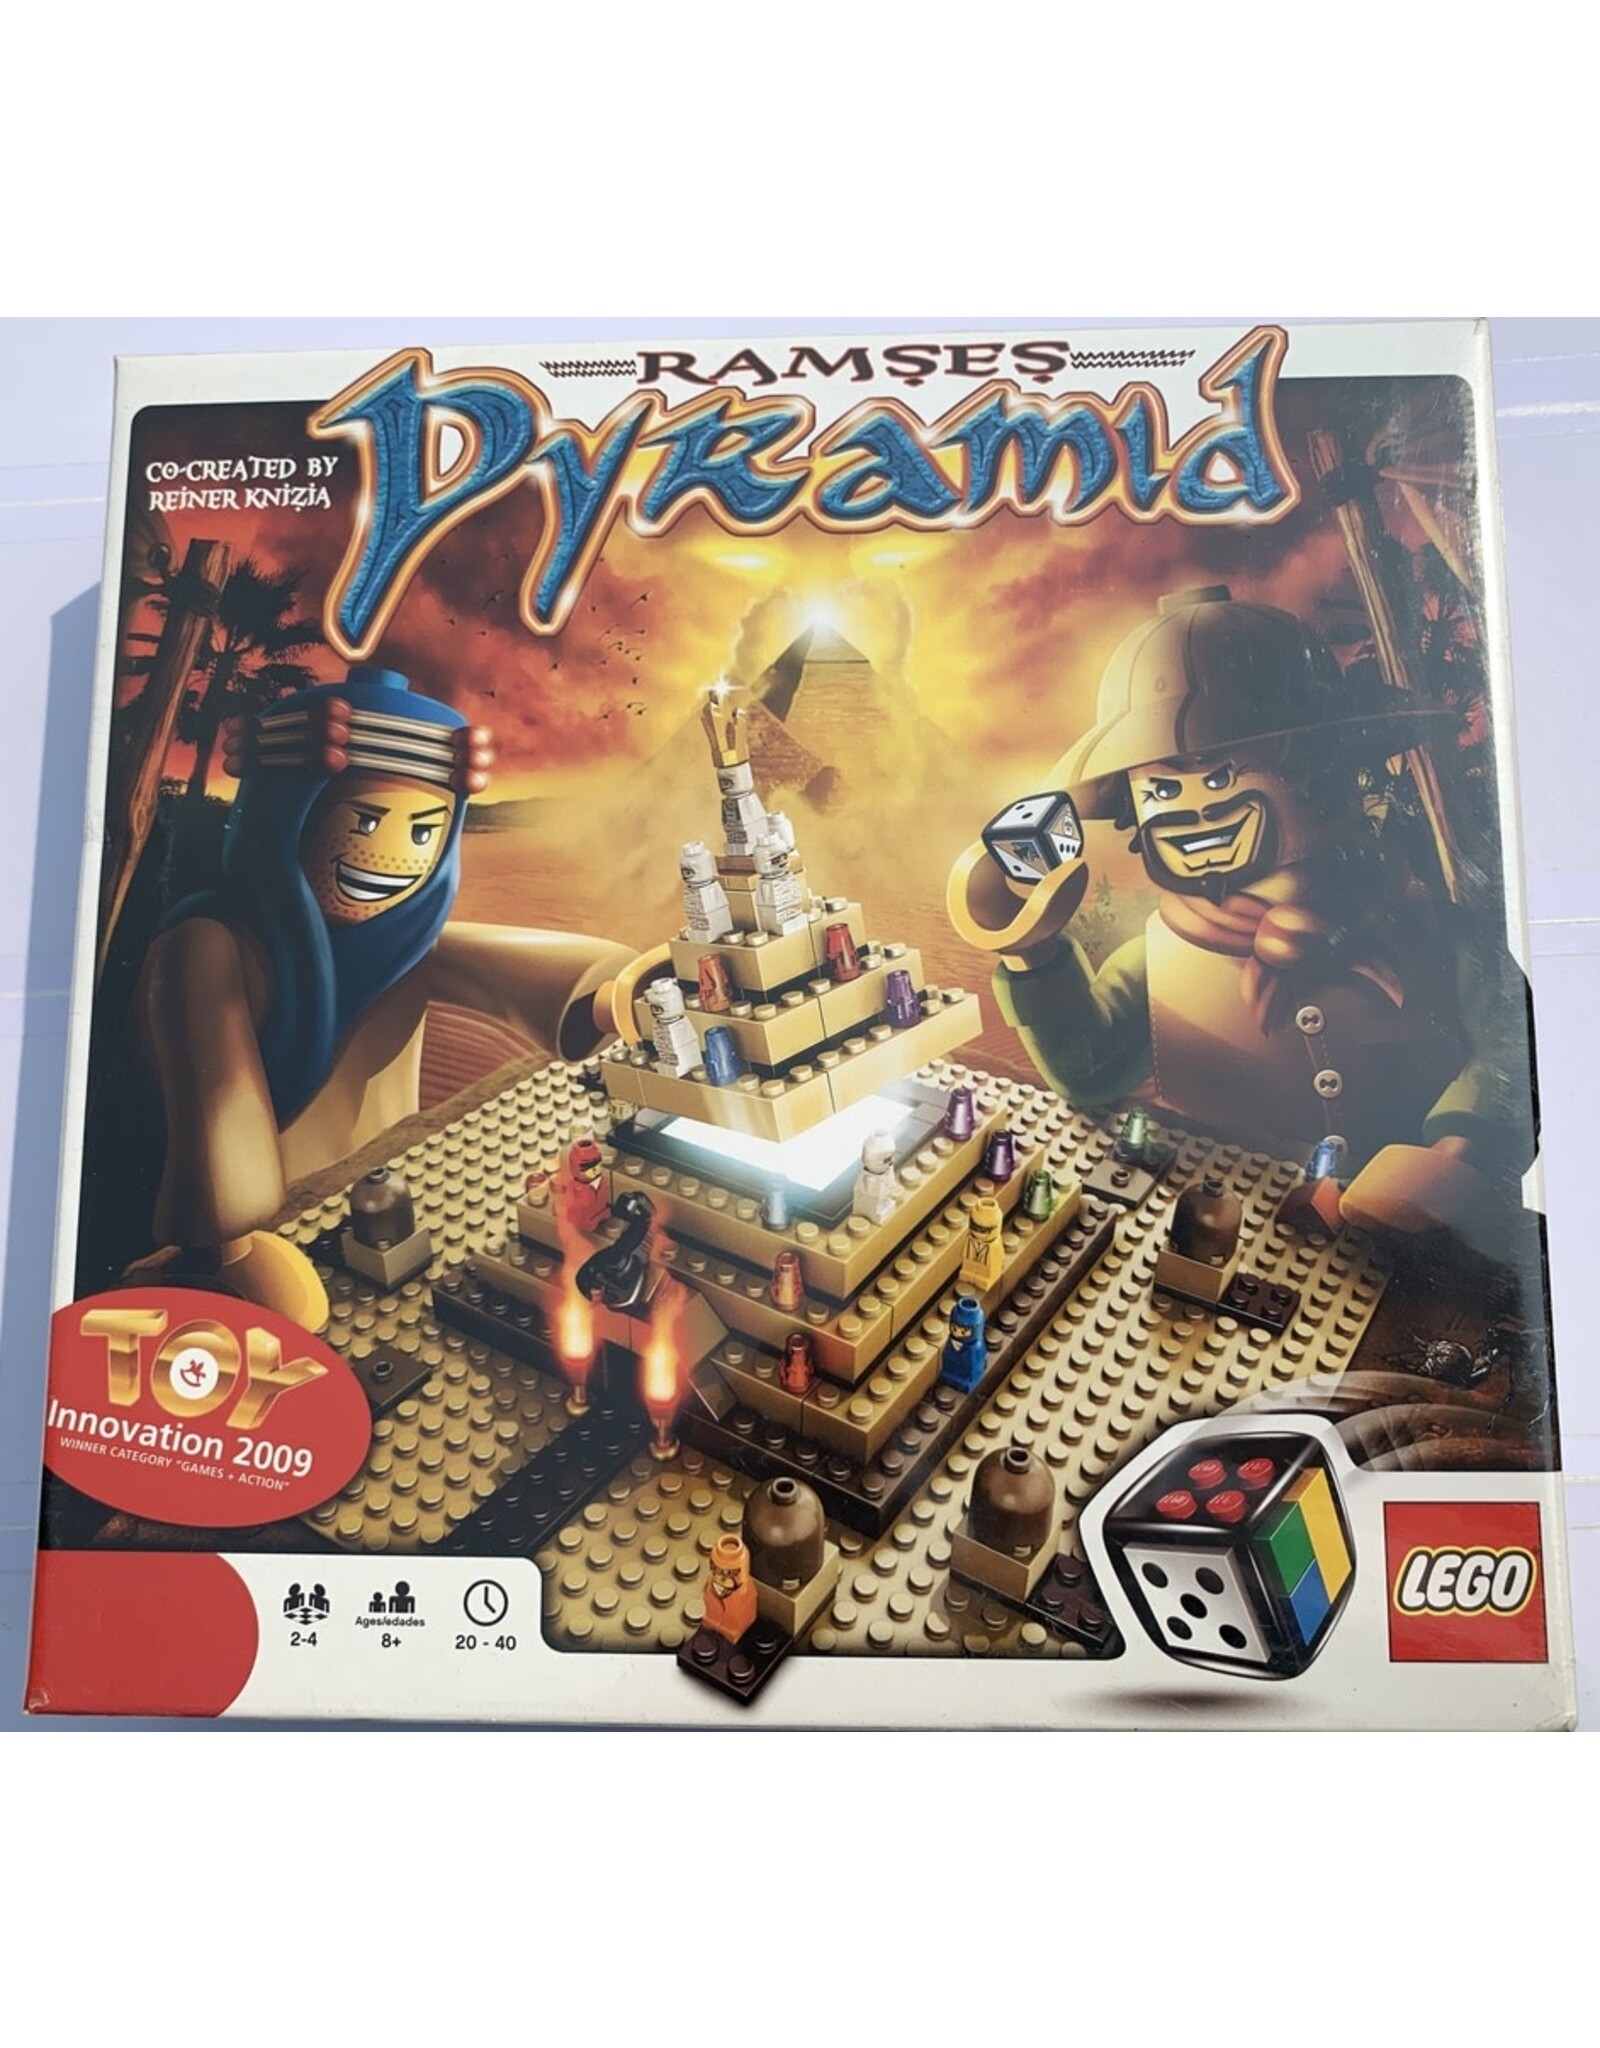 LEGO Ramses Pyramid (2009) NIS